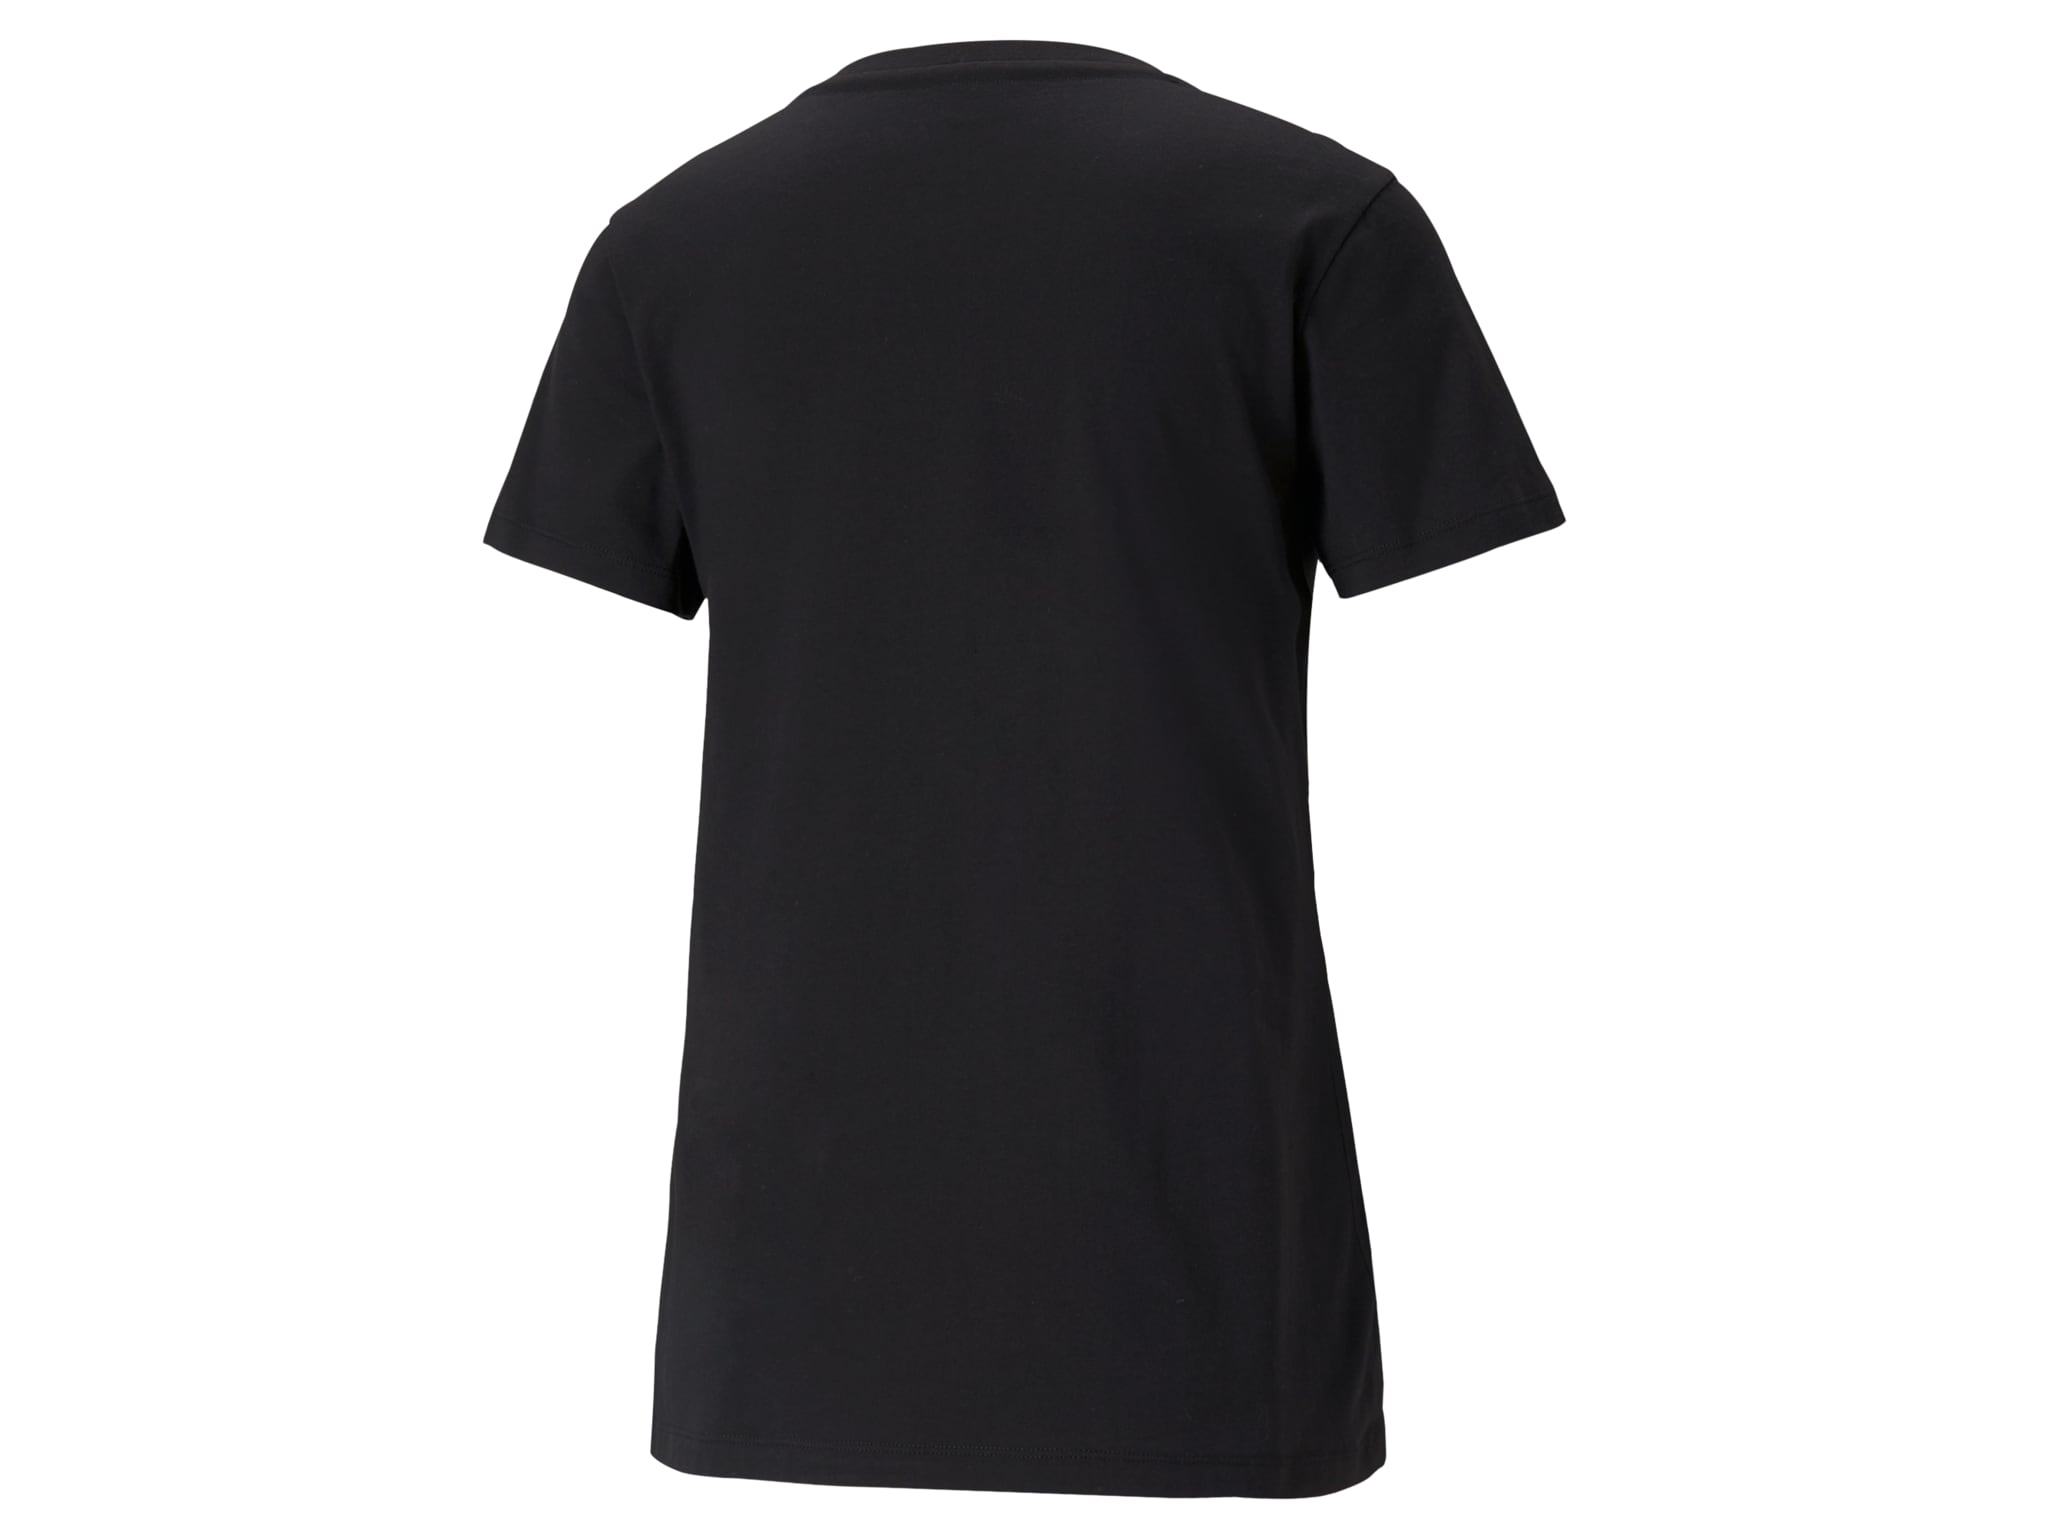 T-Shirt Damen - schwarz, XL